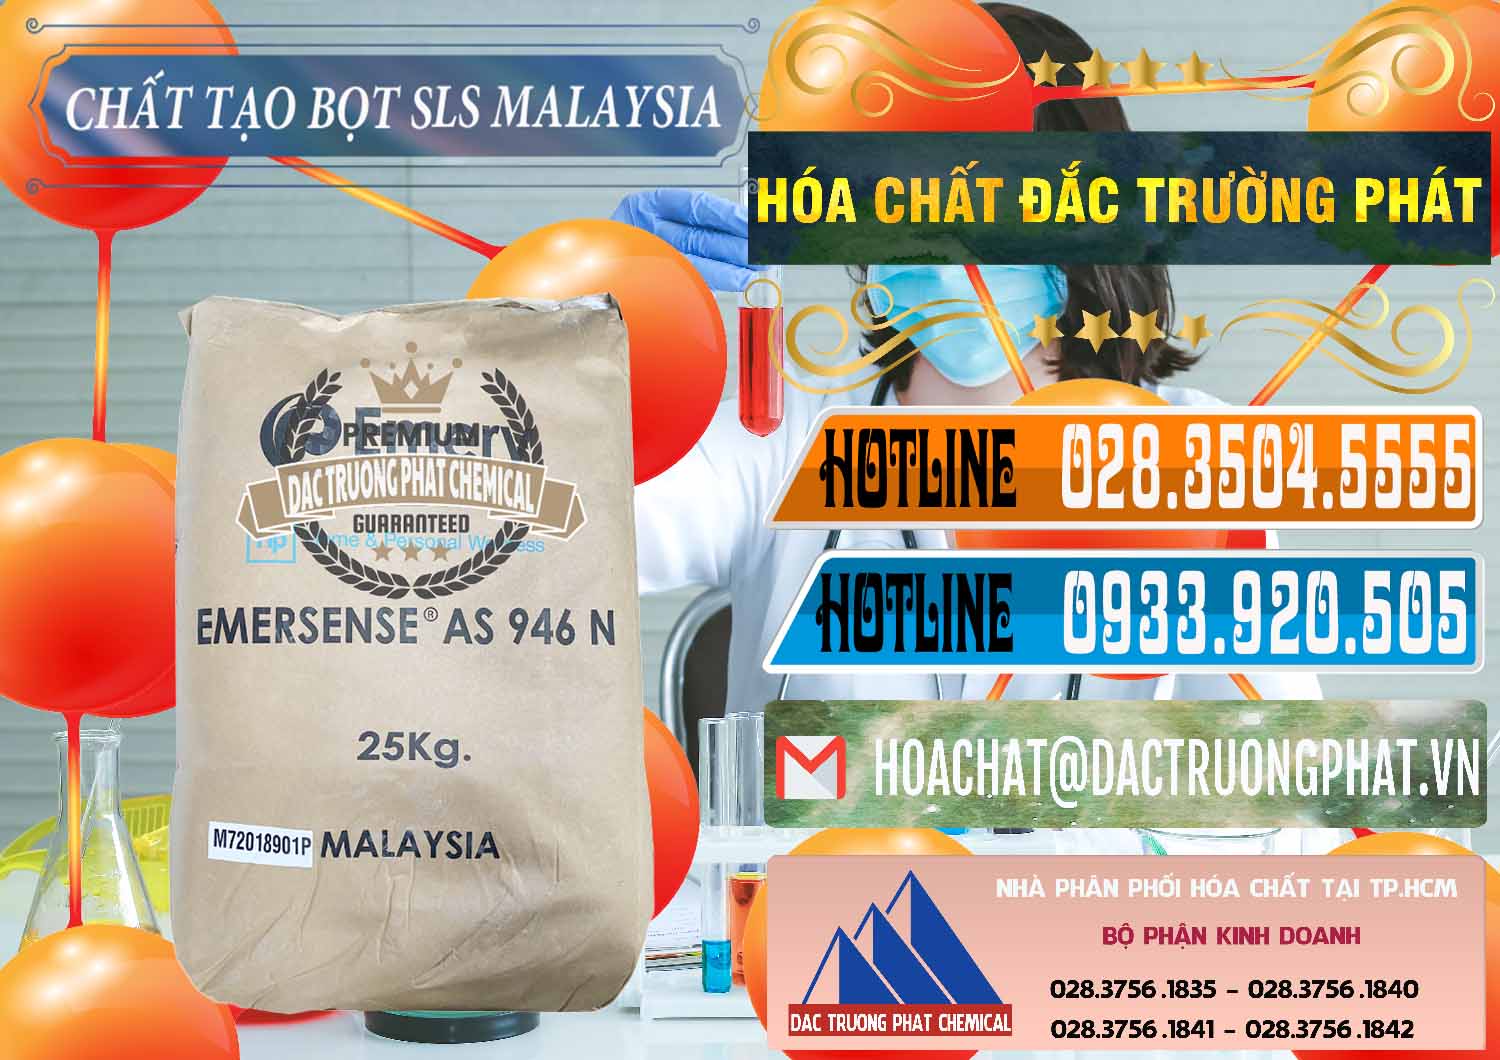 Công ty bán - cung ứng Chất Tạo Bọt SLS Emery - Emersense AS 946N Mã Lai Malaysia - 0423 - Cty chuyên kinh doanh ( cung cấp ) hóa chất tại TP.HCM - stmp.net